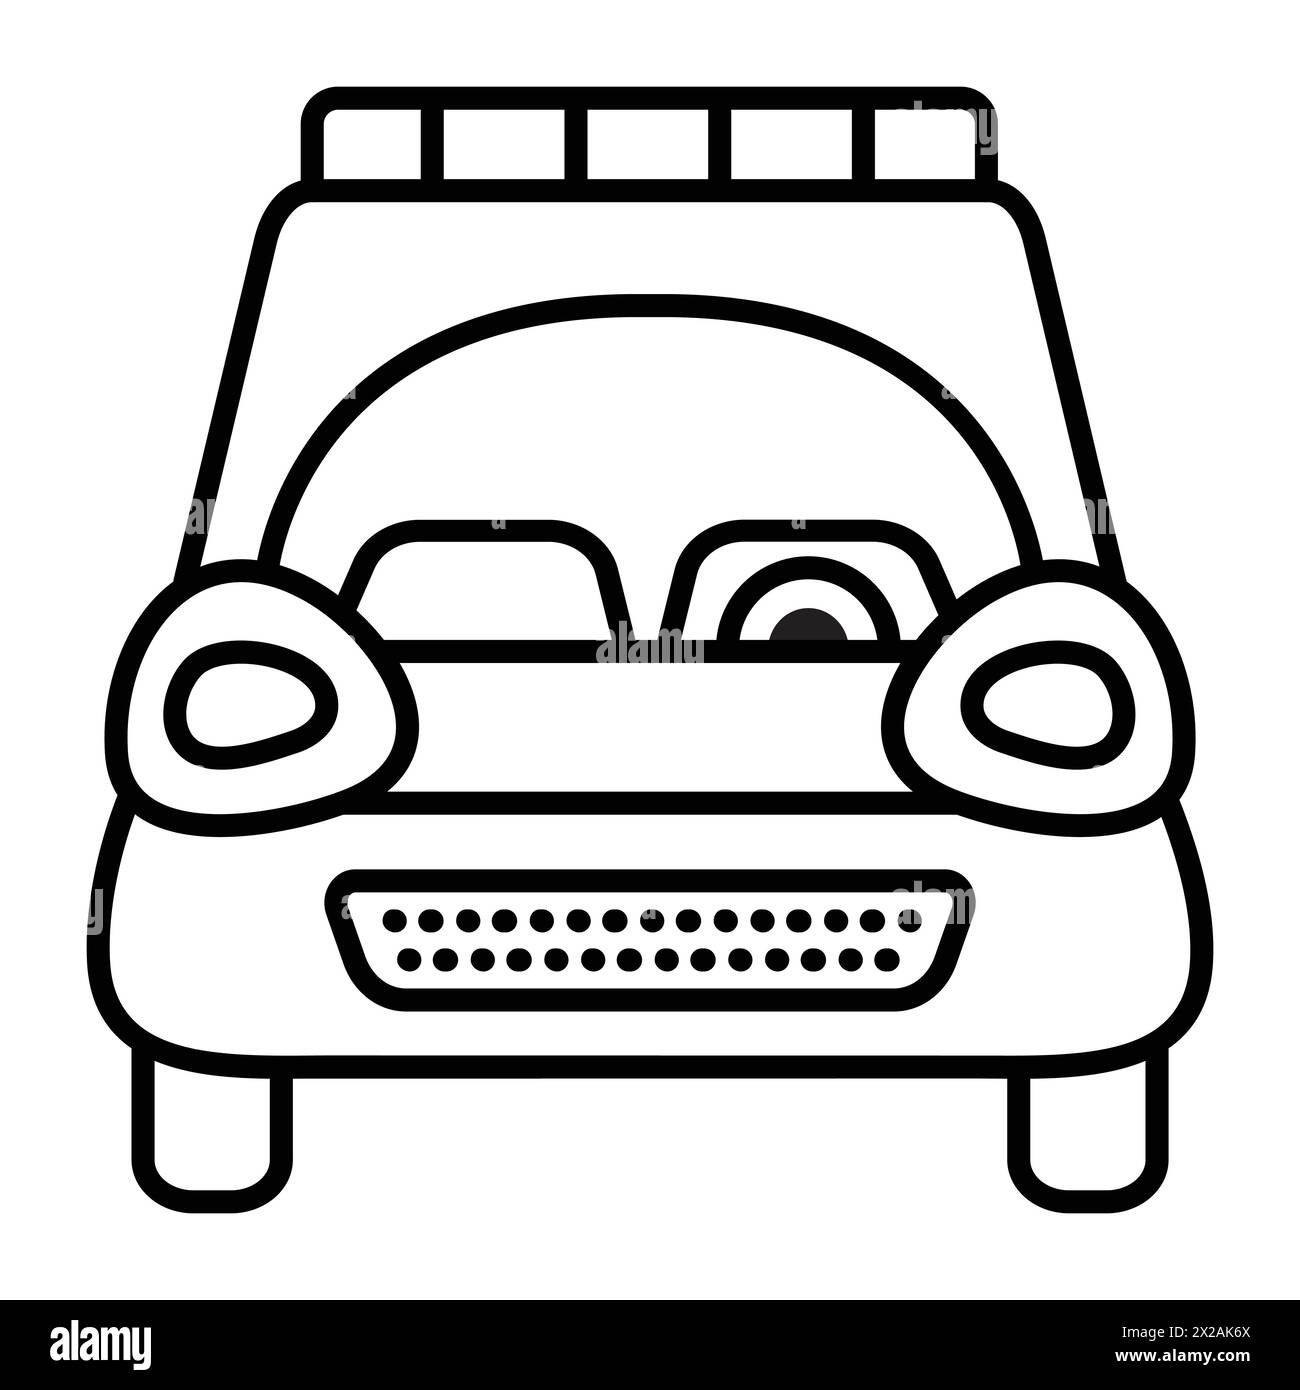 Icona vettoriale linea nera SUV, simbolo di un veicolo utilitario sportivo singolo, pittogramma monocromatico per la vista anteriore di un crossover, trasporto 4x4 a quattro ruote Illustrazione Vettoriale